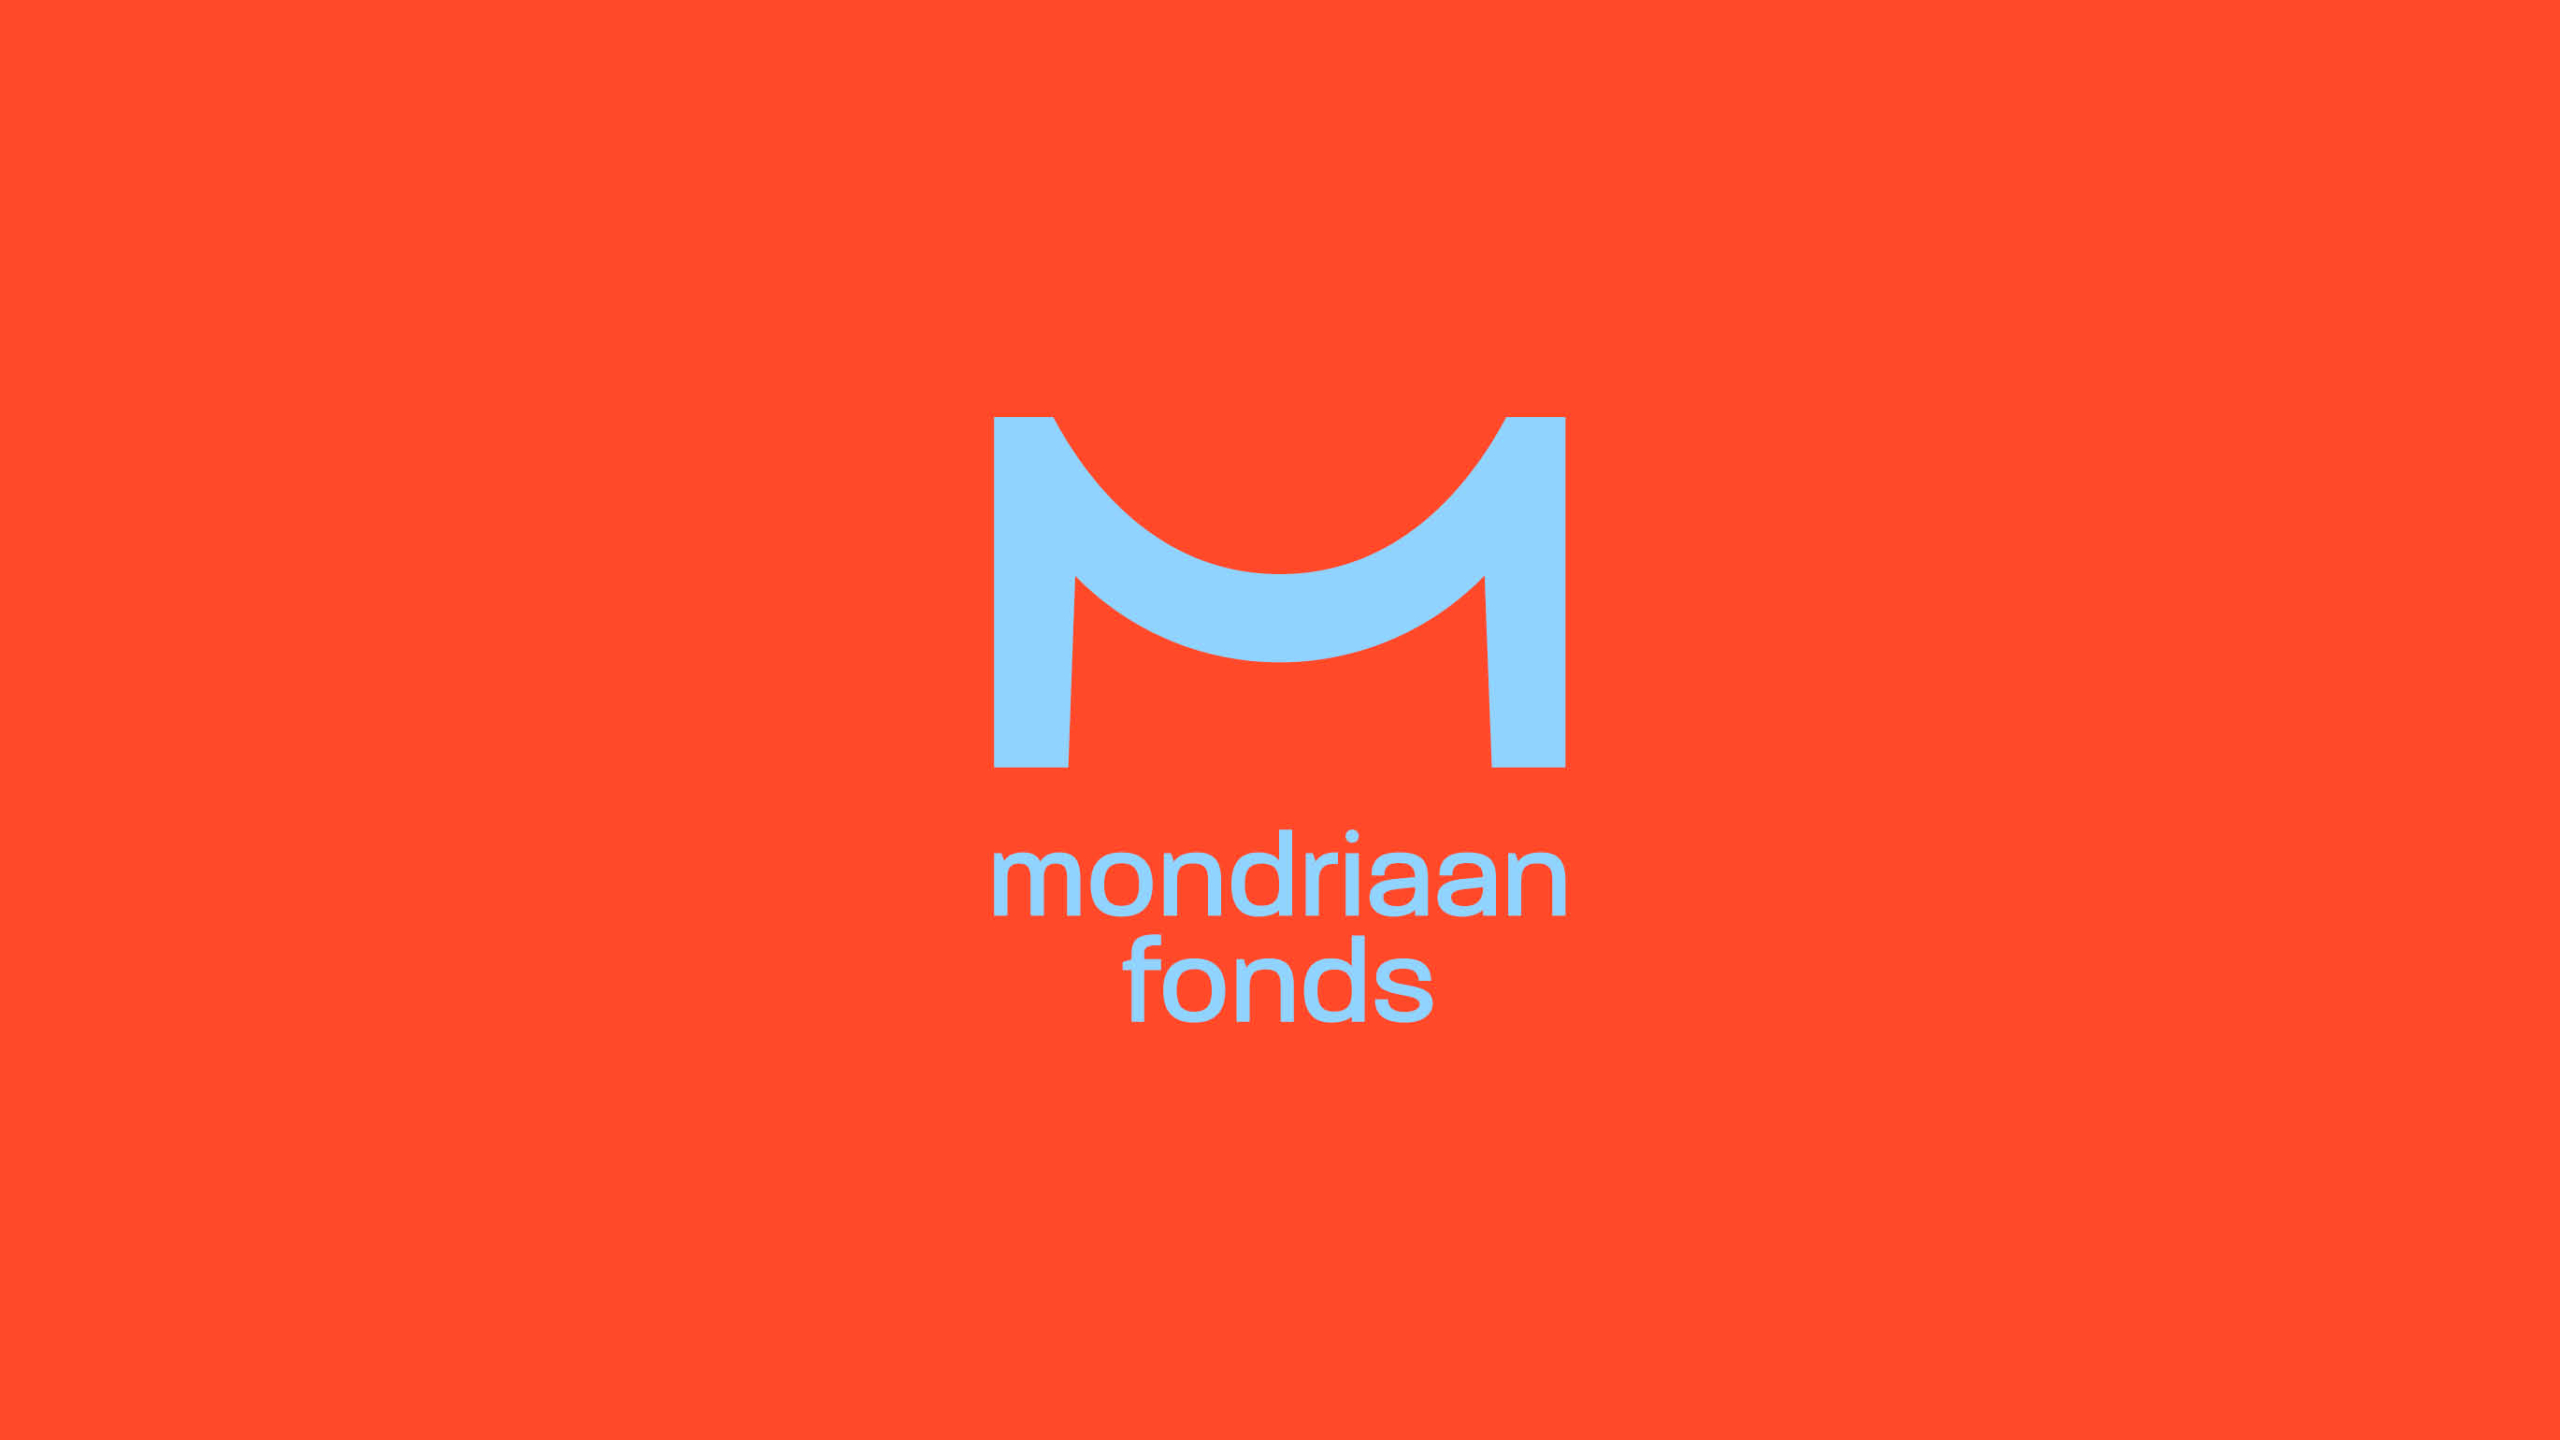 (c) Mondriaanfonds.nl